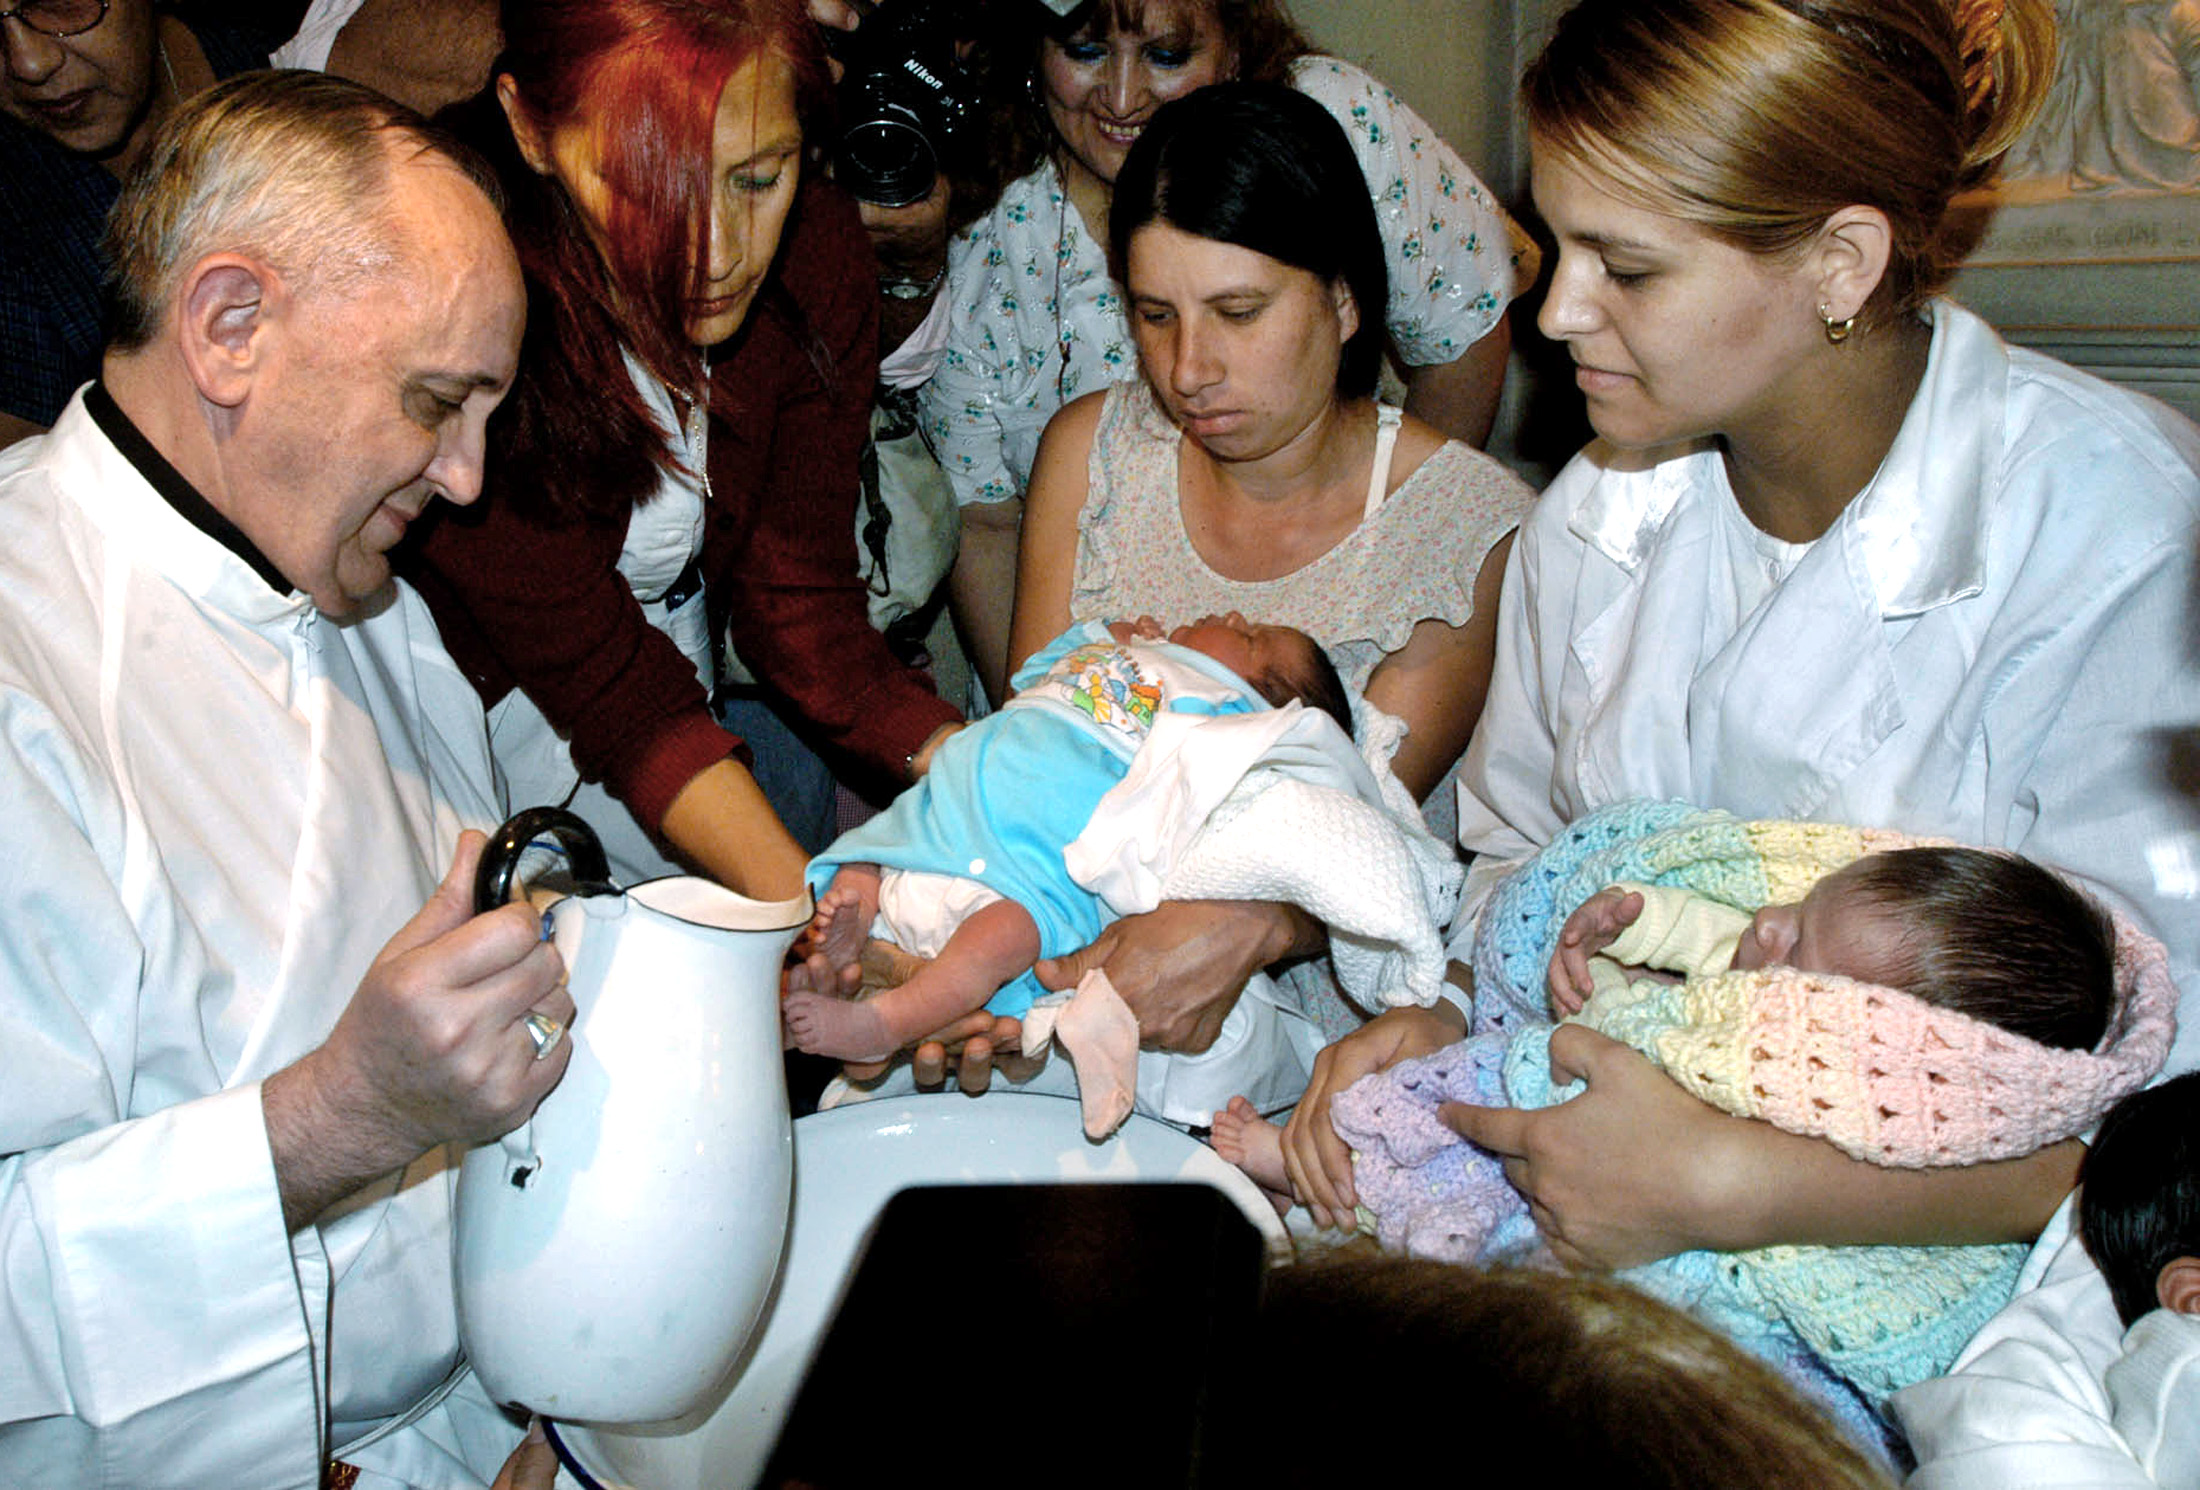 Cardinal Bergoglio Washes the Feet of Two Newborns 